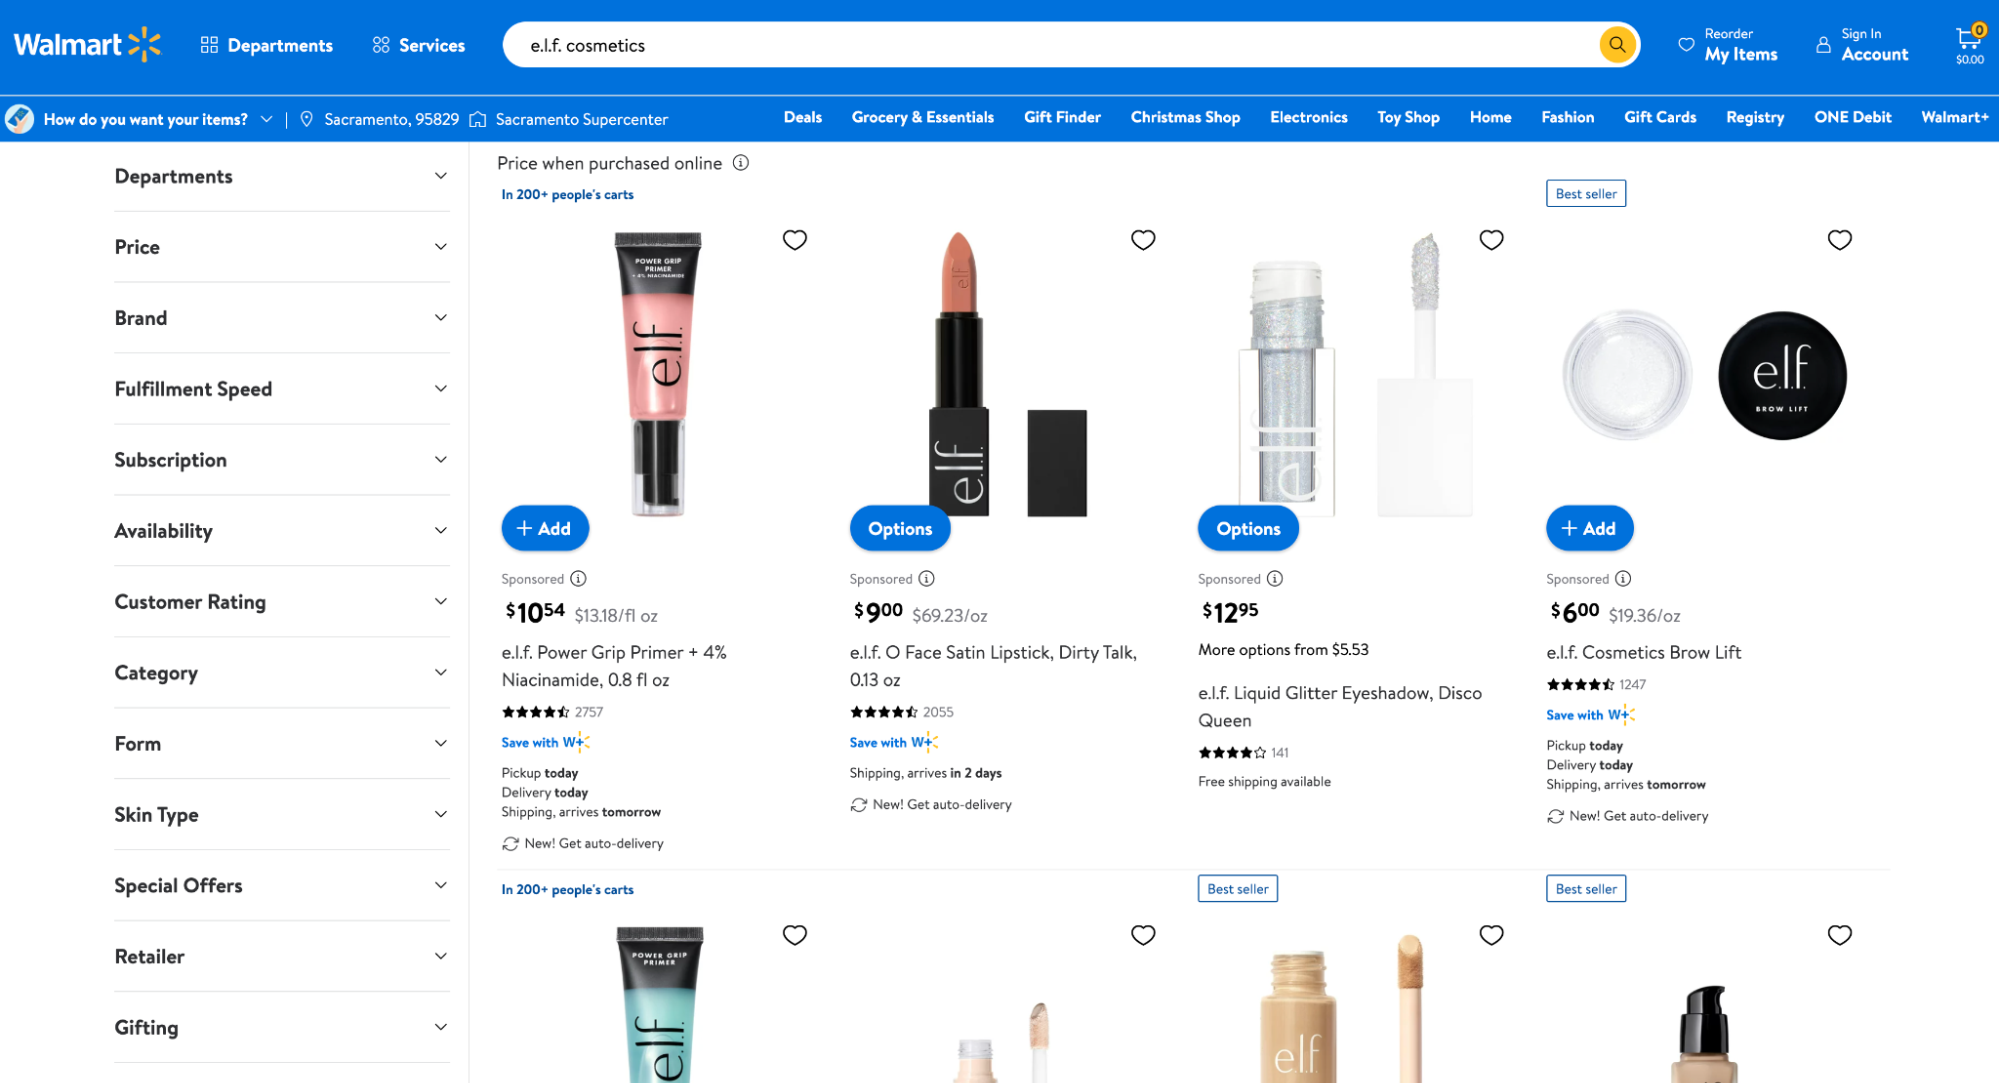 e.l.f. cosmetics sponsored ads on the Walmart e-commerce channel.